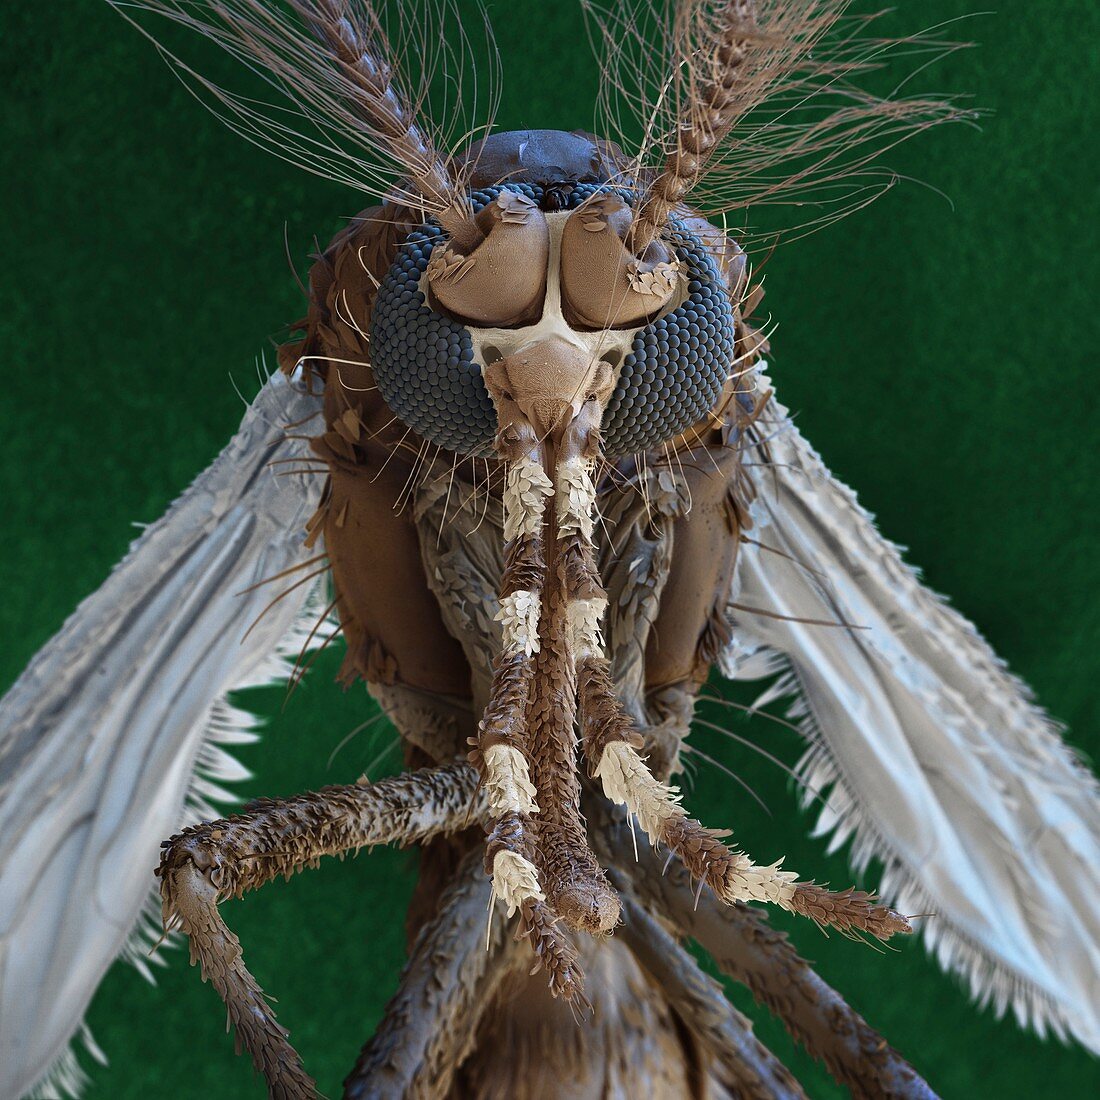 Aedes aegypti mosquito, SEM